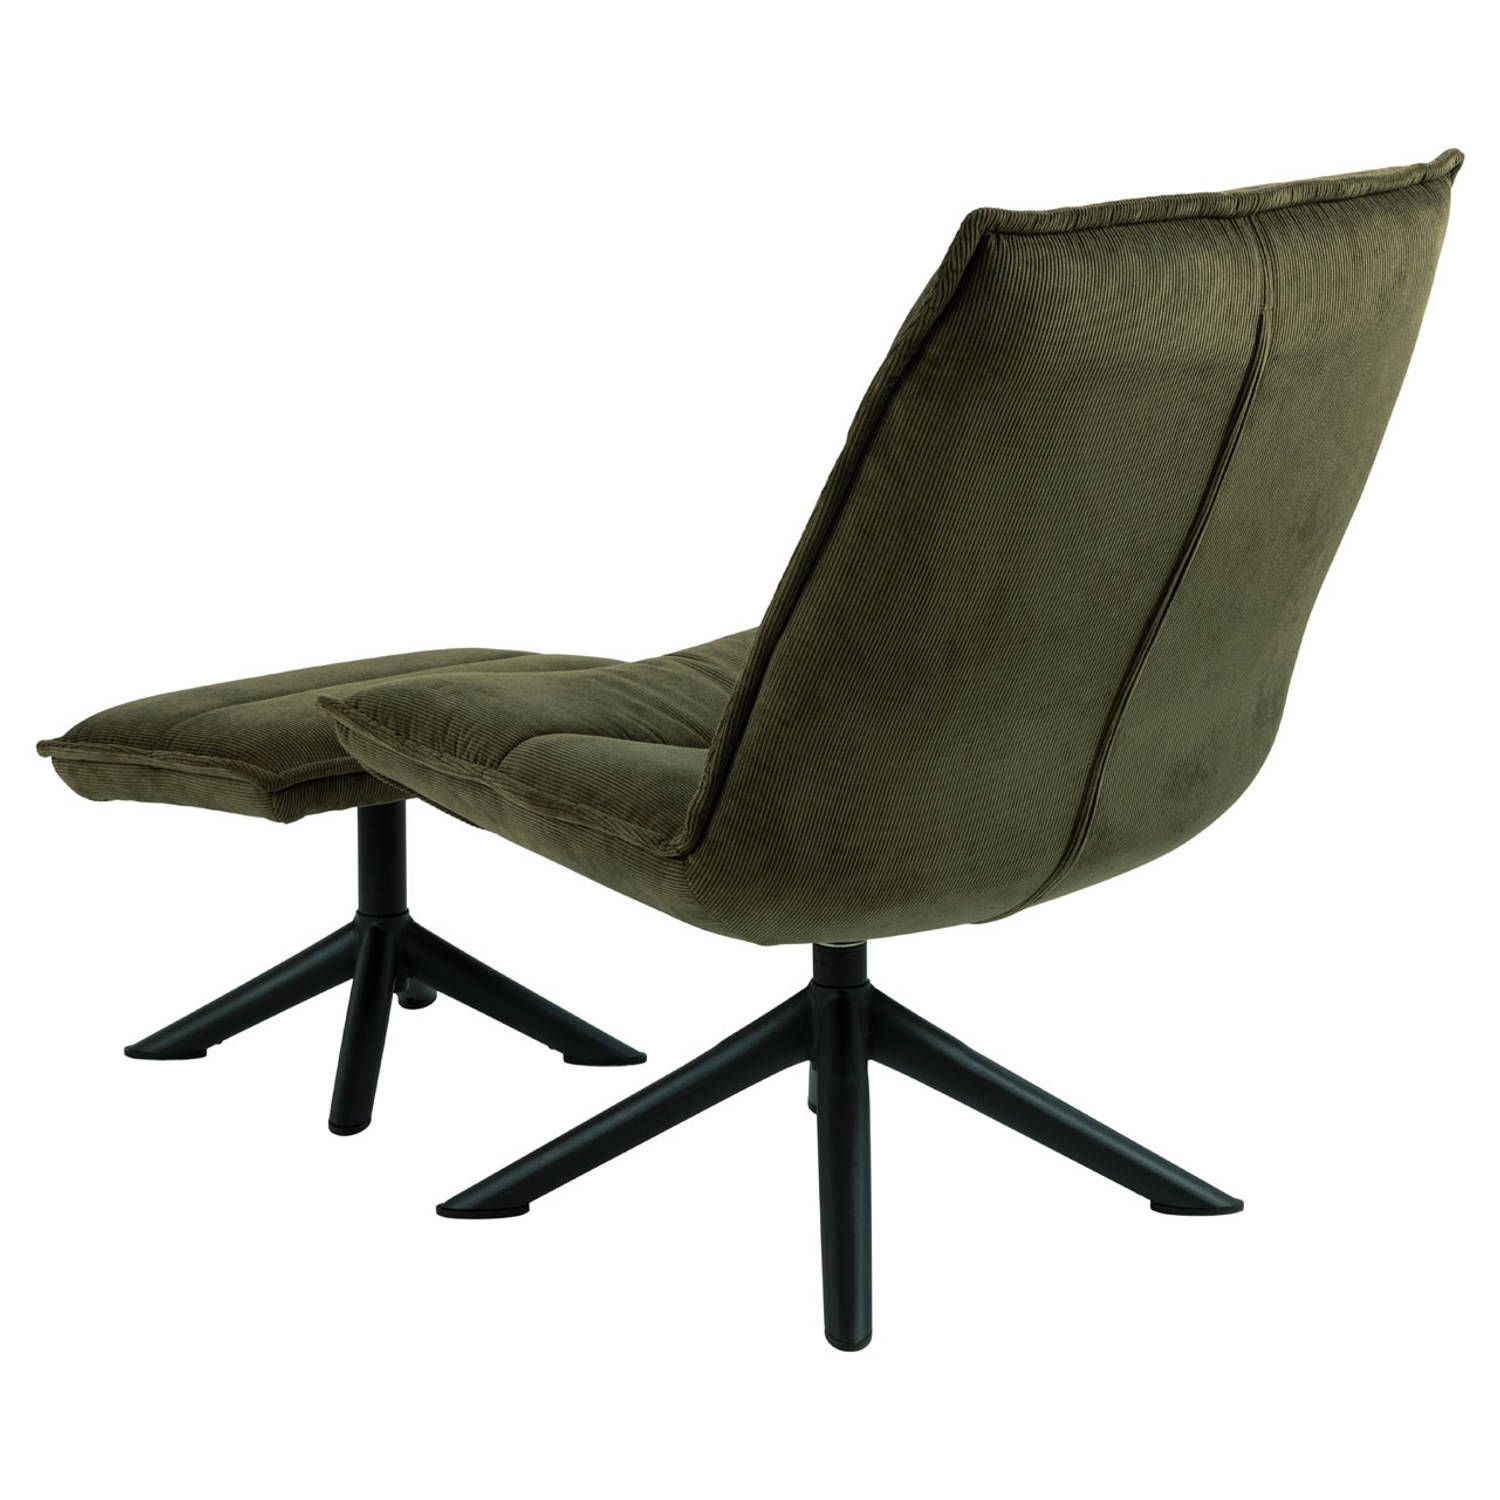 Binnen Reflectie de sneeuw Bliwa fauteuil loungestoel met voetenbank groen, zwart. | Blokker